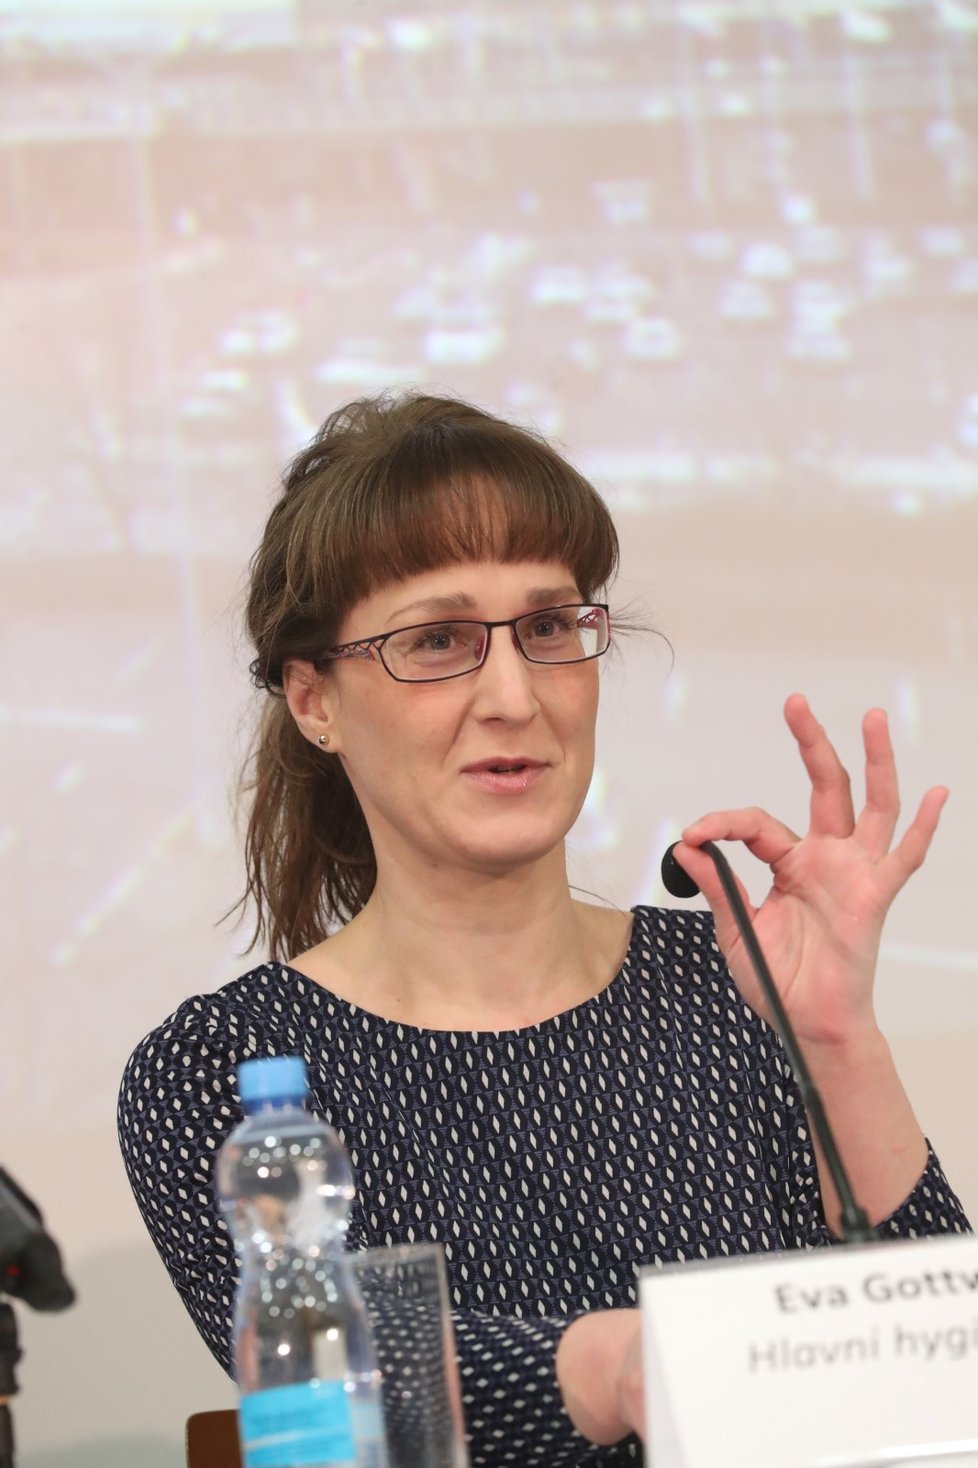 Šéfka hygieniků Eva Gottvaldová na mimořádné tiskové konferenci k opatřením kvůli koronaviru (26.1.2020)